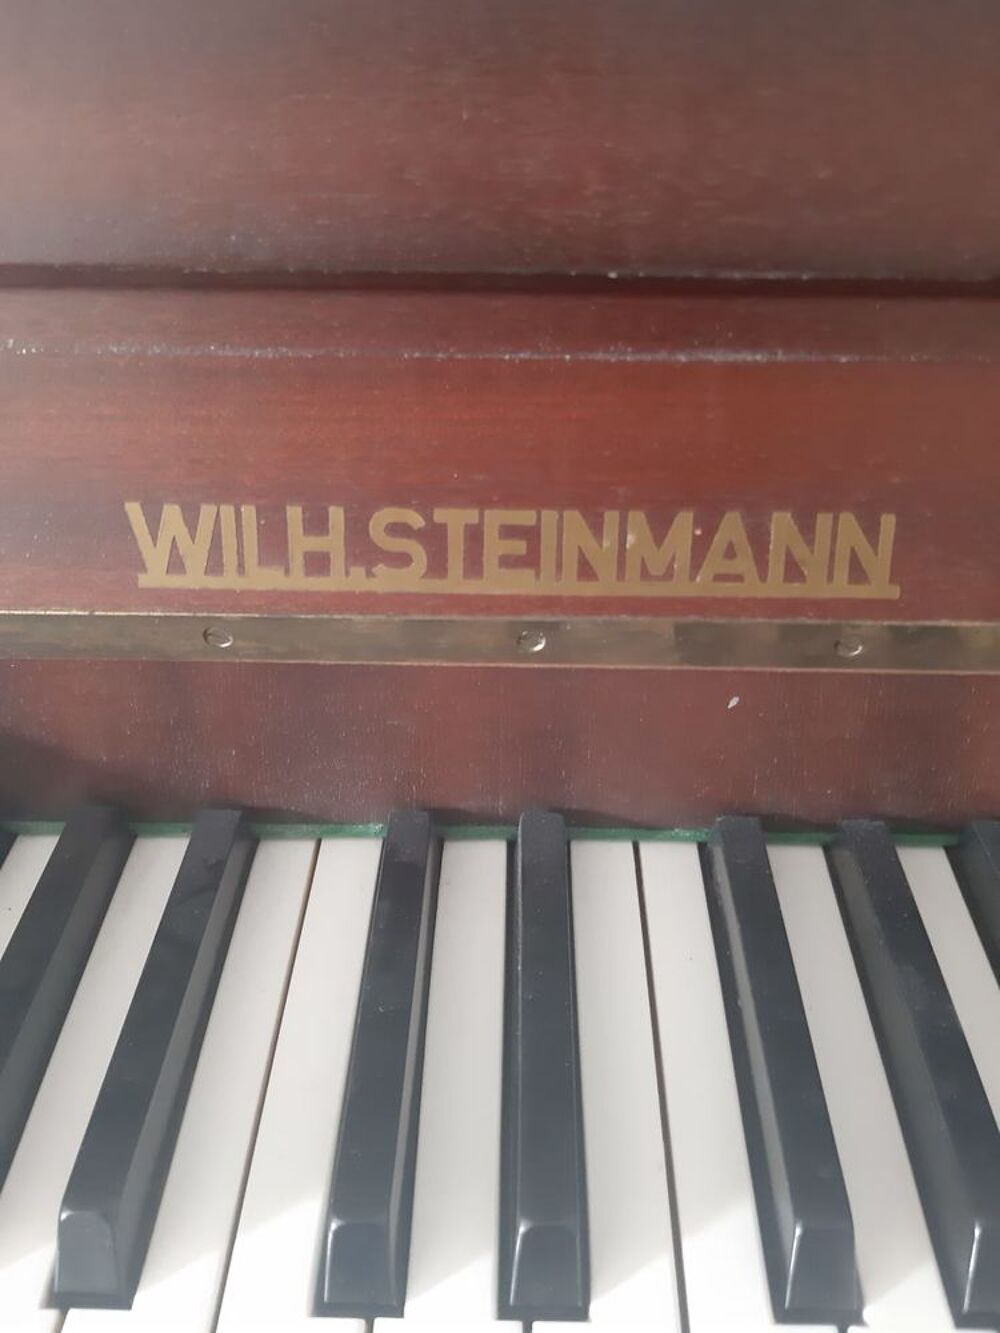 Piano droit Steinmann Instruments de musique